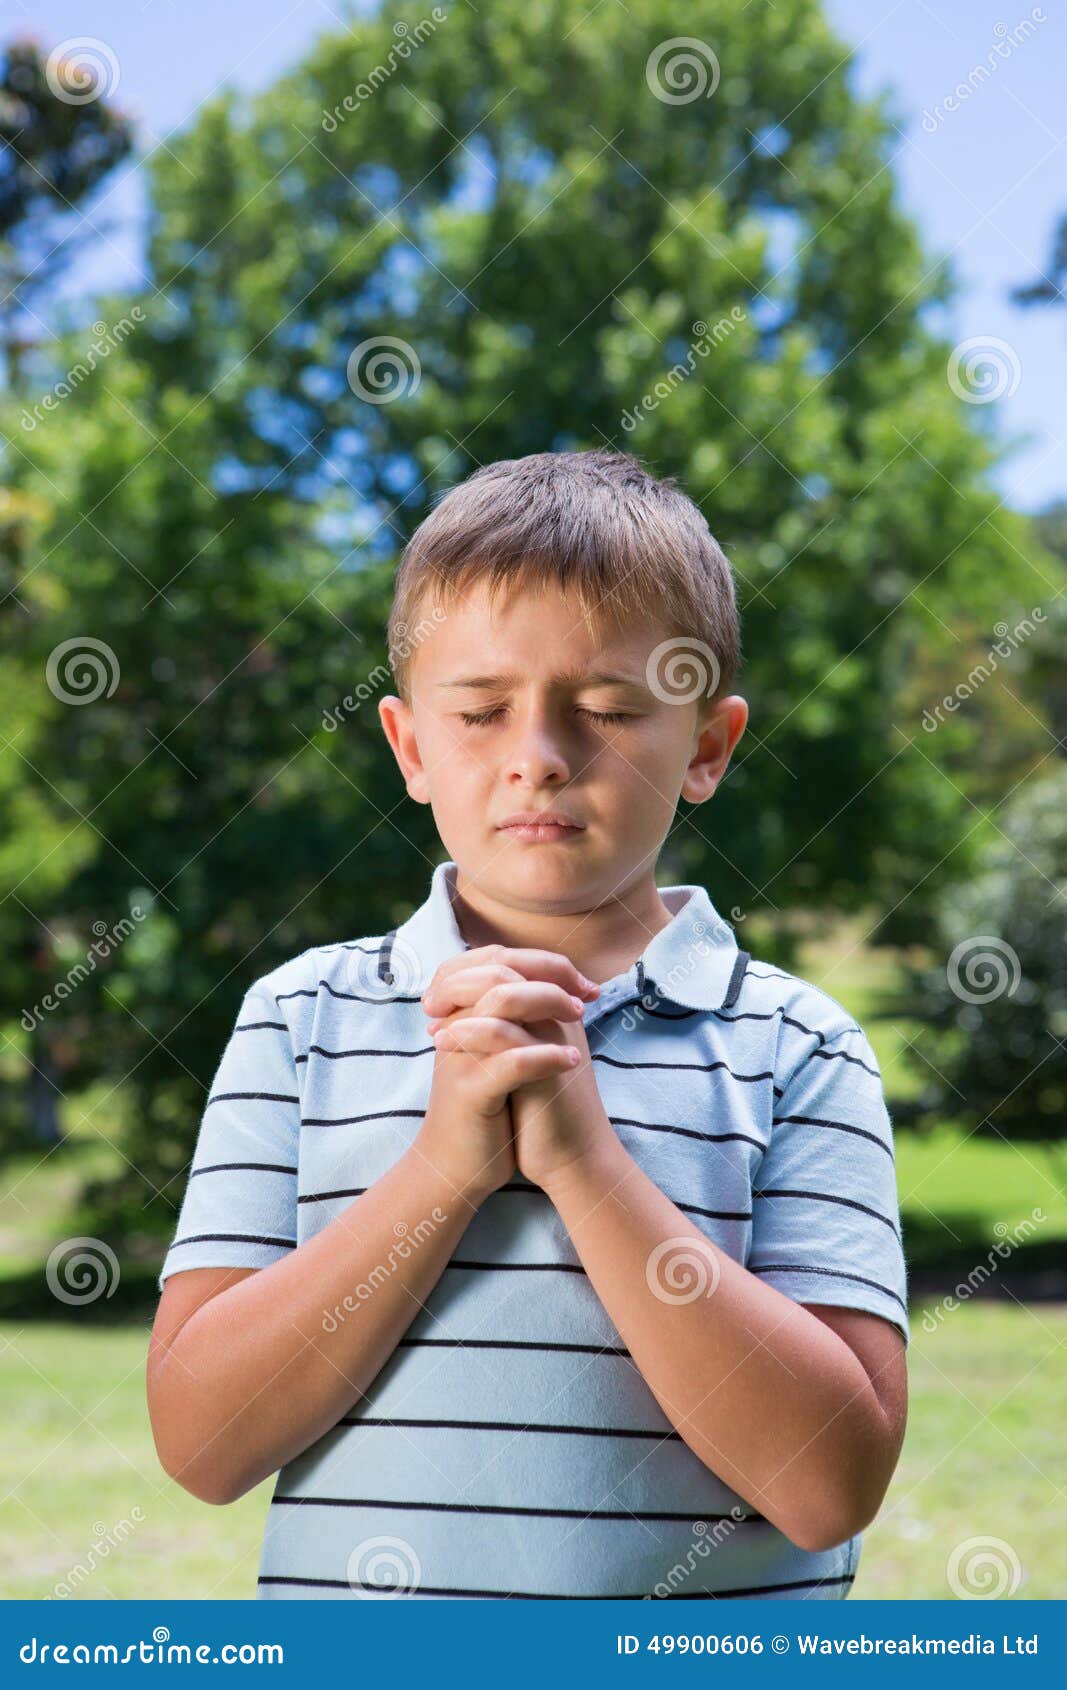 双手合十祈祷的中国男人 库存图片. 图片 包括有 祈祷, 折叠, 胡言乱语的, 运作, 沉寂, 浓度, 姿态 - 274106623